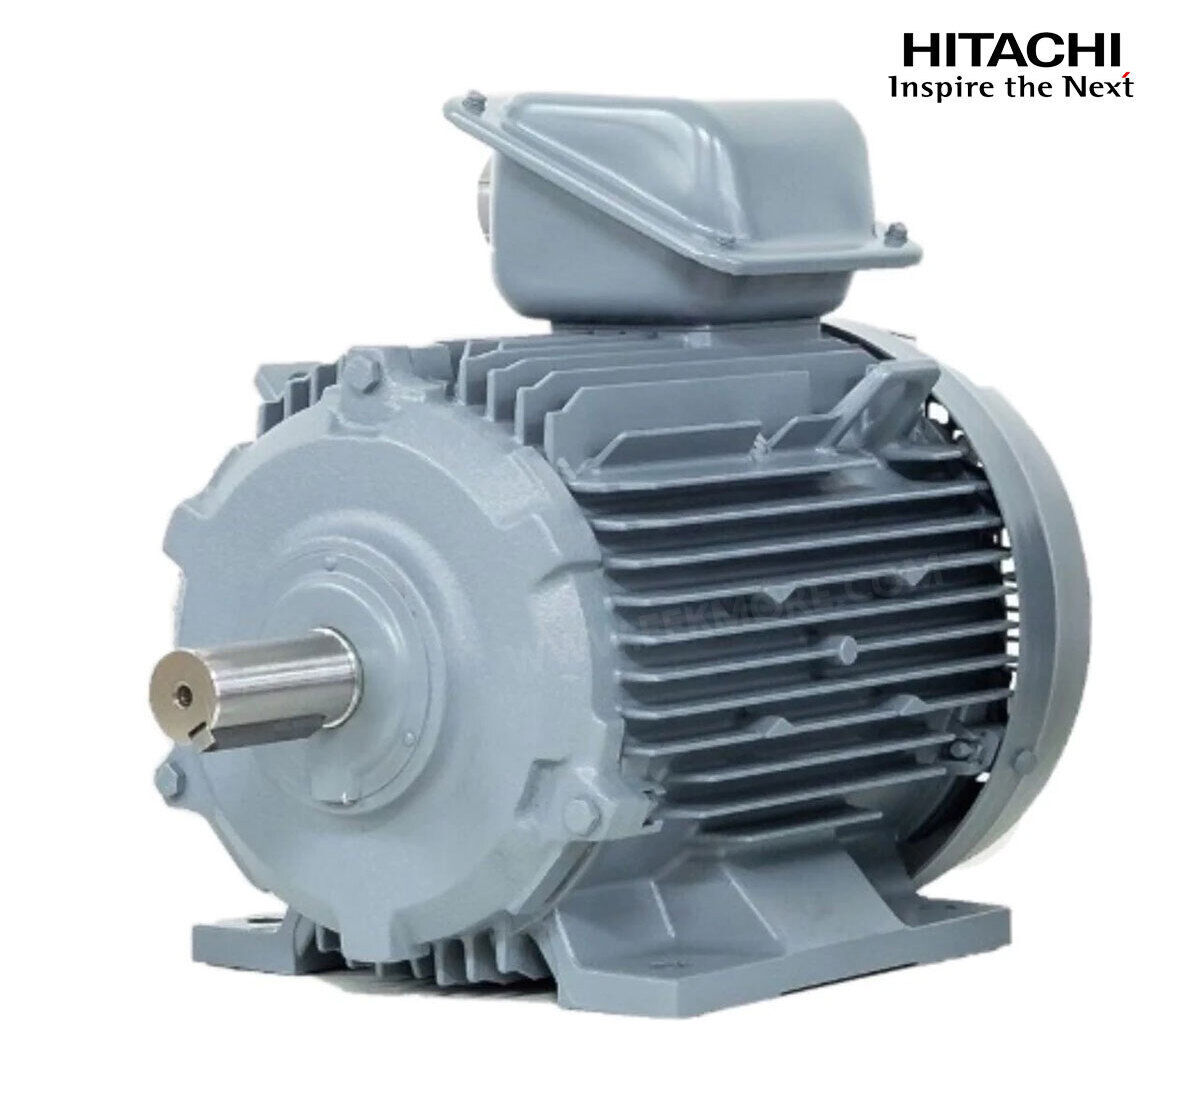 มอเตอร์ฮิตาชิของแท้ 100% HITACHI รุ่น TFO-KK กำลัง 60 แรงม้า (45 KW.) กำลังไฟฟ้าที่ใช้ 380V ความเร็วรอบตัวเปล่า 1450 RPM แกนเพลามอเตอร์ 60 MM.รับประกัน 3 ปี มีของพร้อมจัดส่งทุกวัน